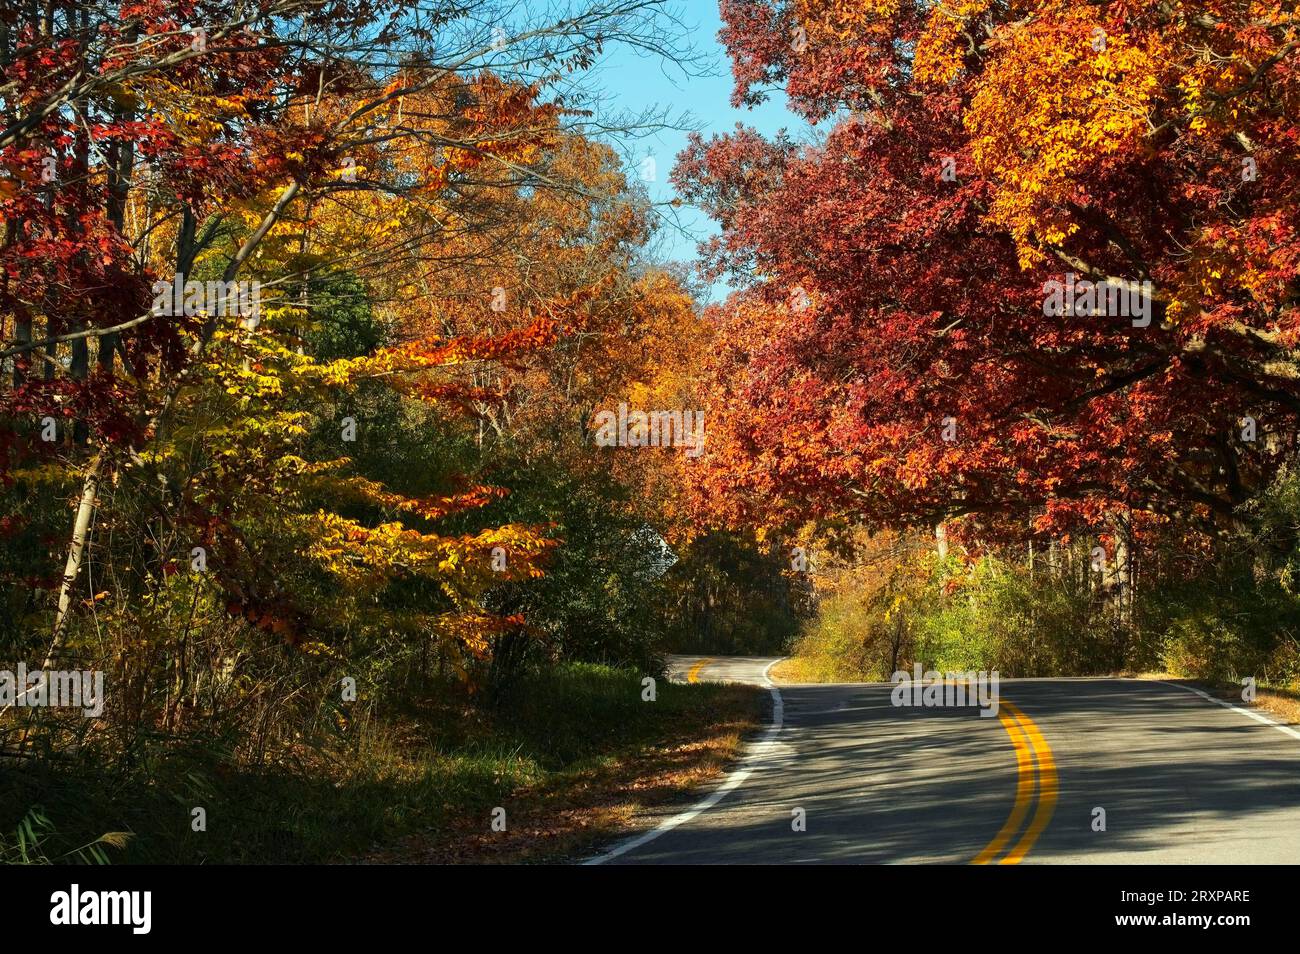 Im Nordosten von Ohio kurvt eine Landstraße durch buntes Herbstlaub. Stockfoto